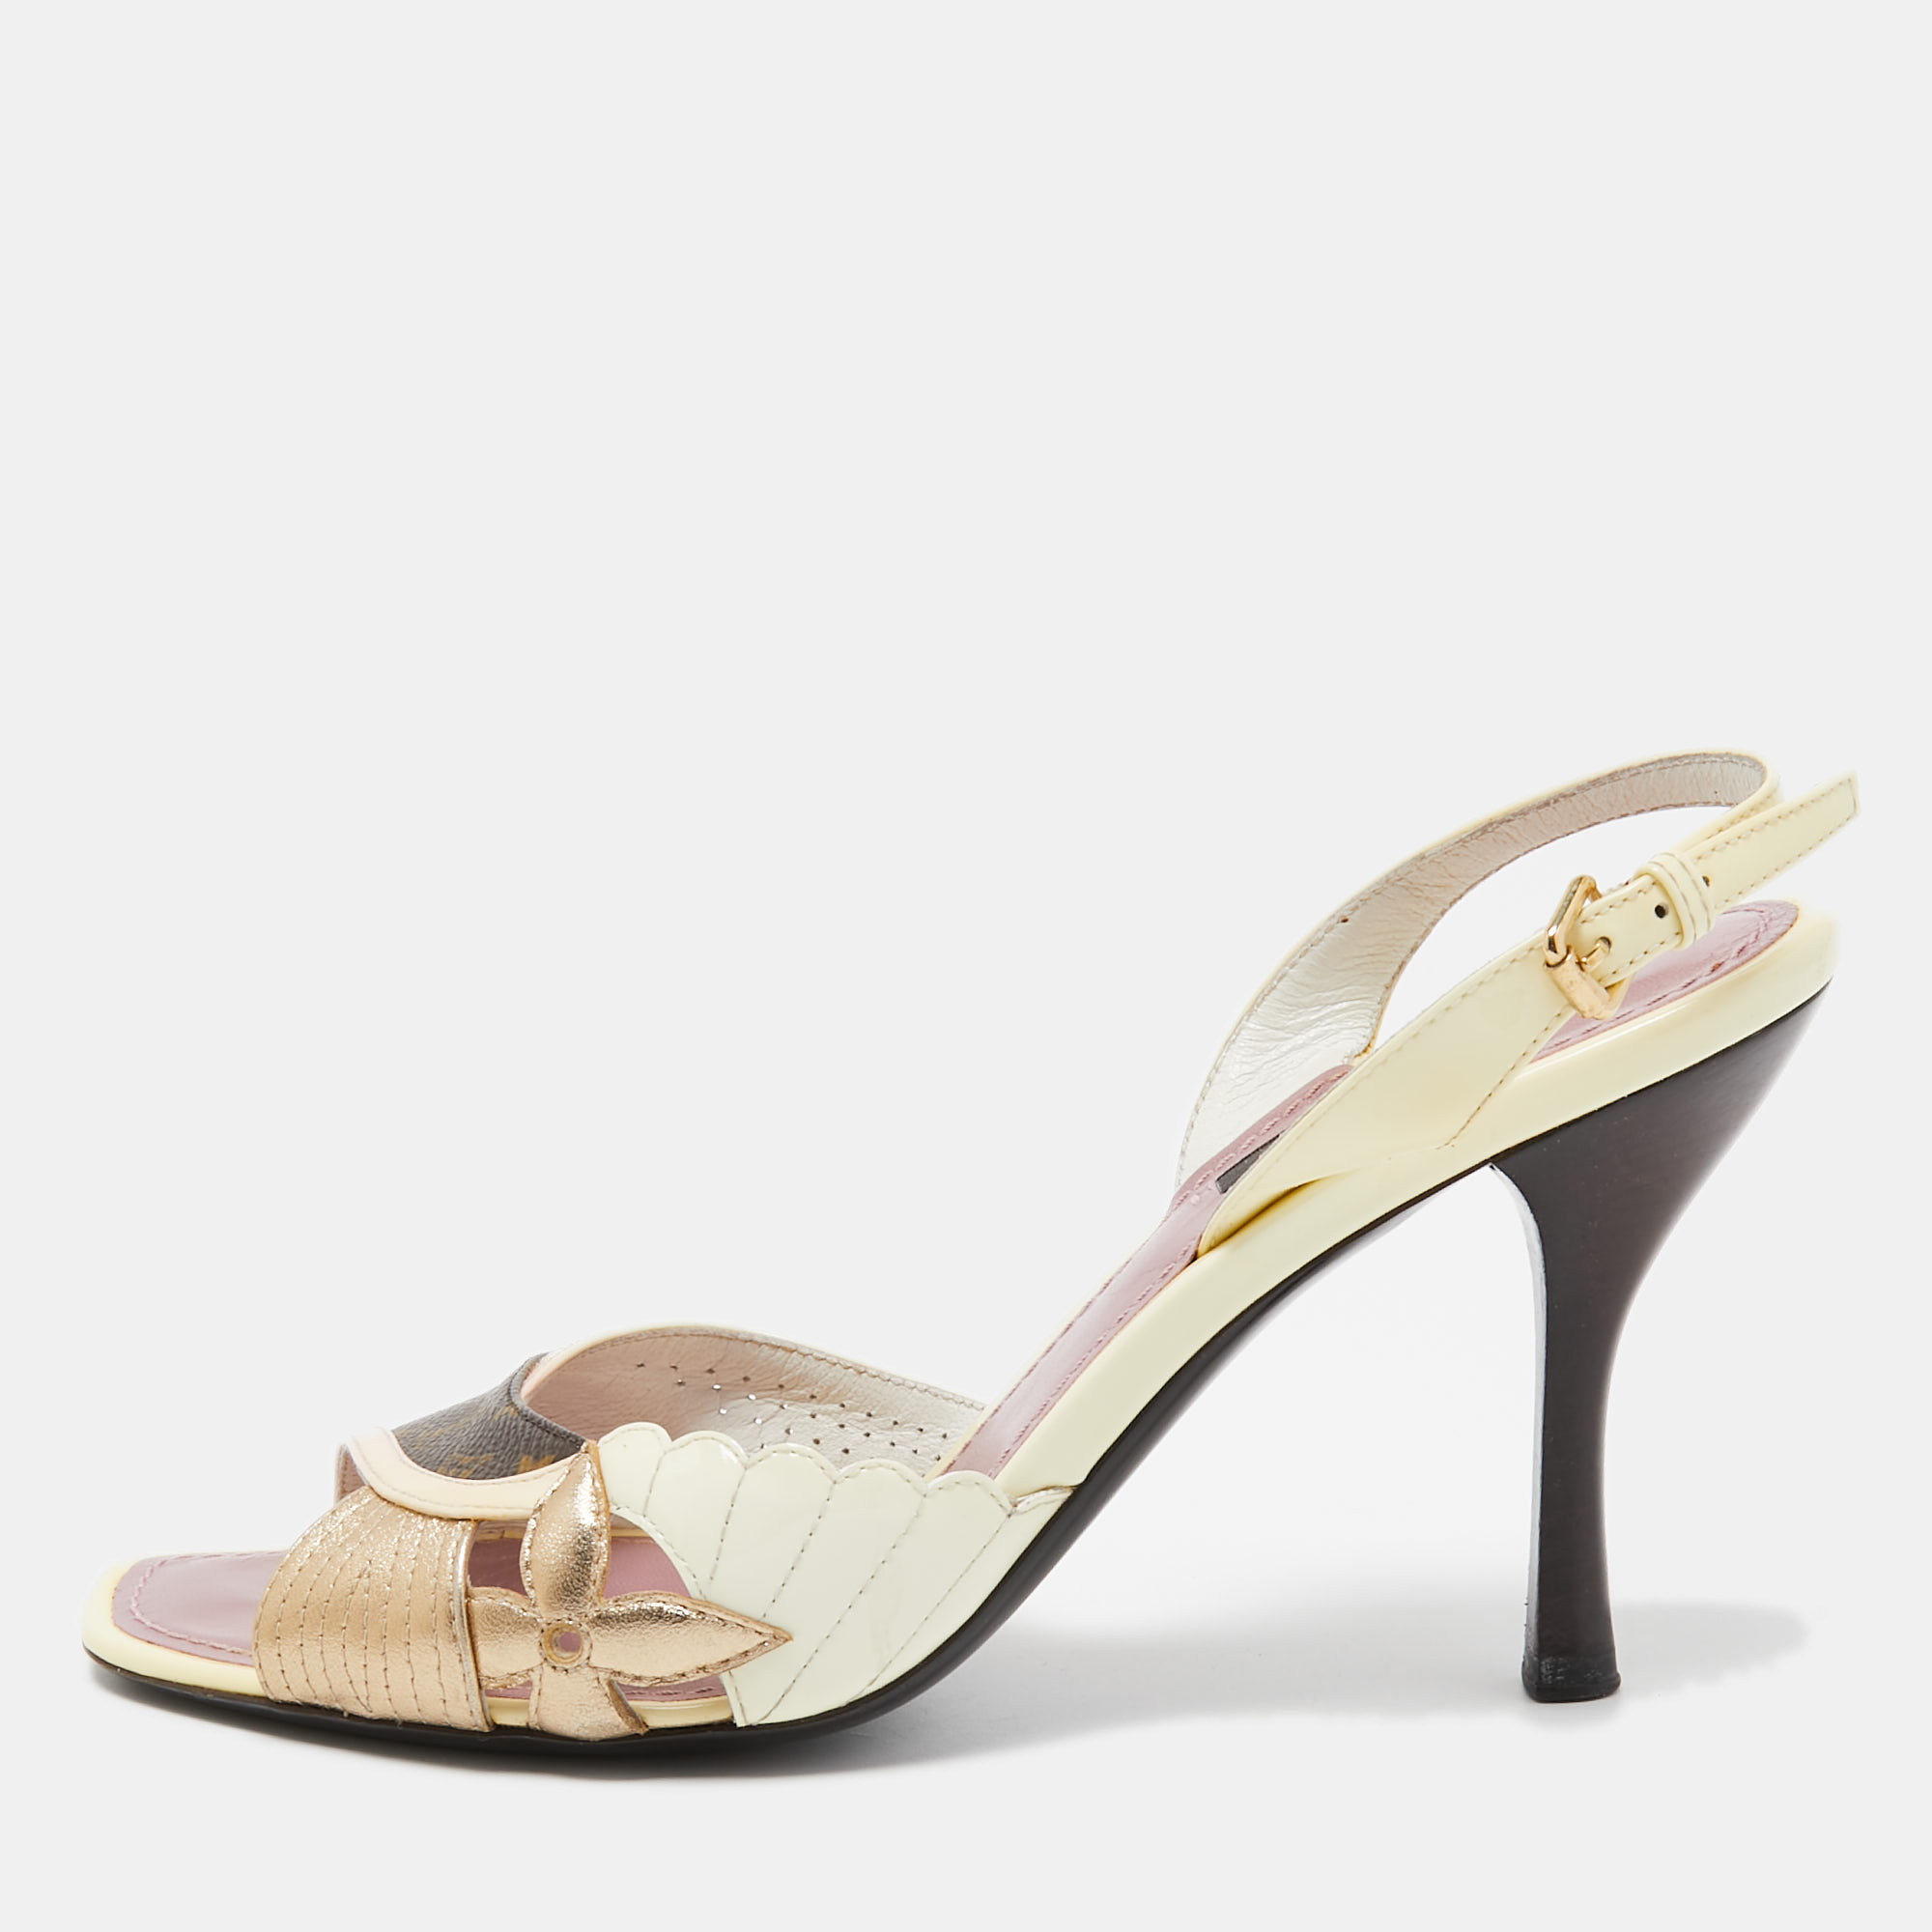 Louis Vuitton Multicolor Patent And Canvas Slingback Sandals Size 37.5